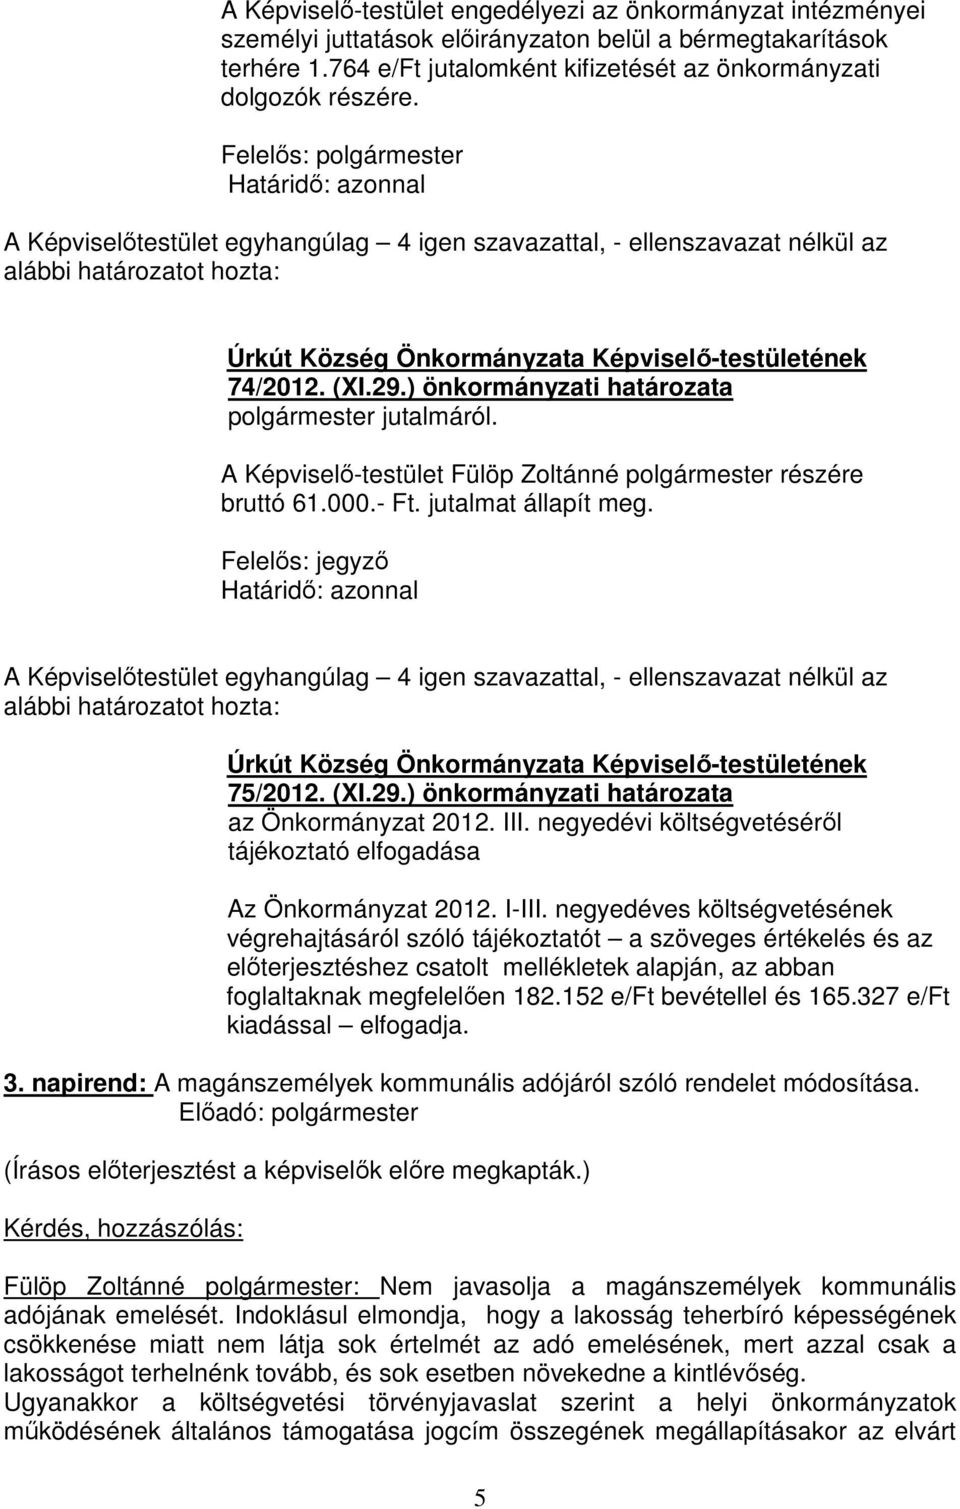 A Képviselő-testület Fülöp Zoltánné polgármester részére bruttó 61.000.- Ft. jutalmat állapít meg.